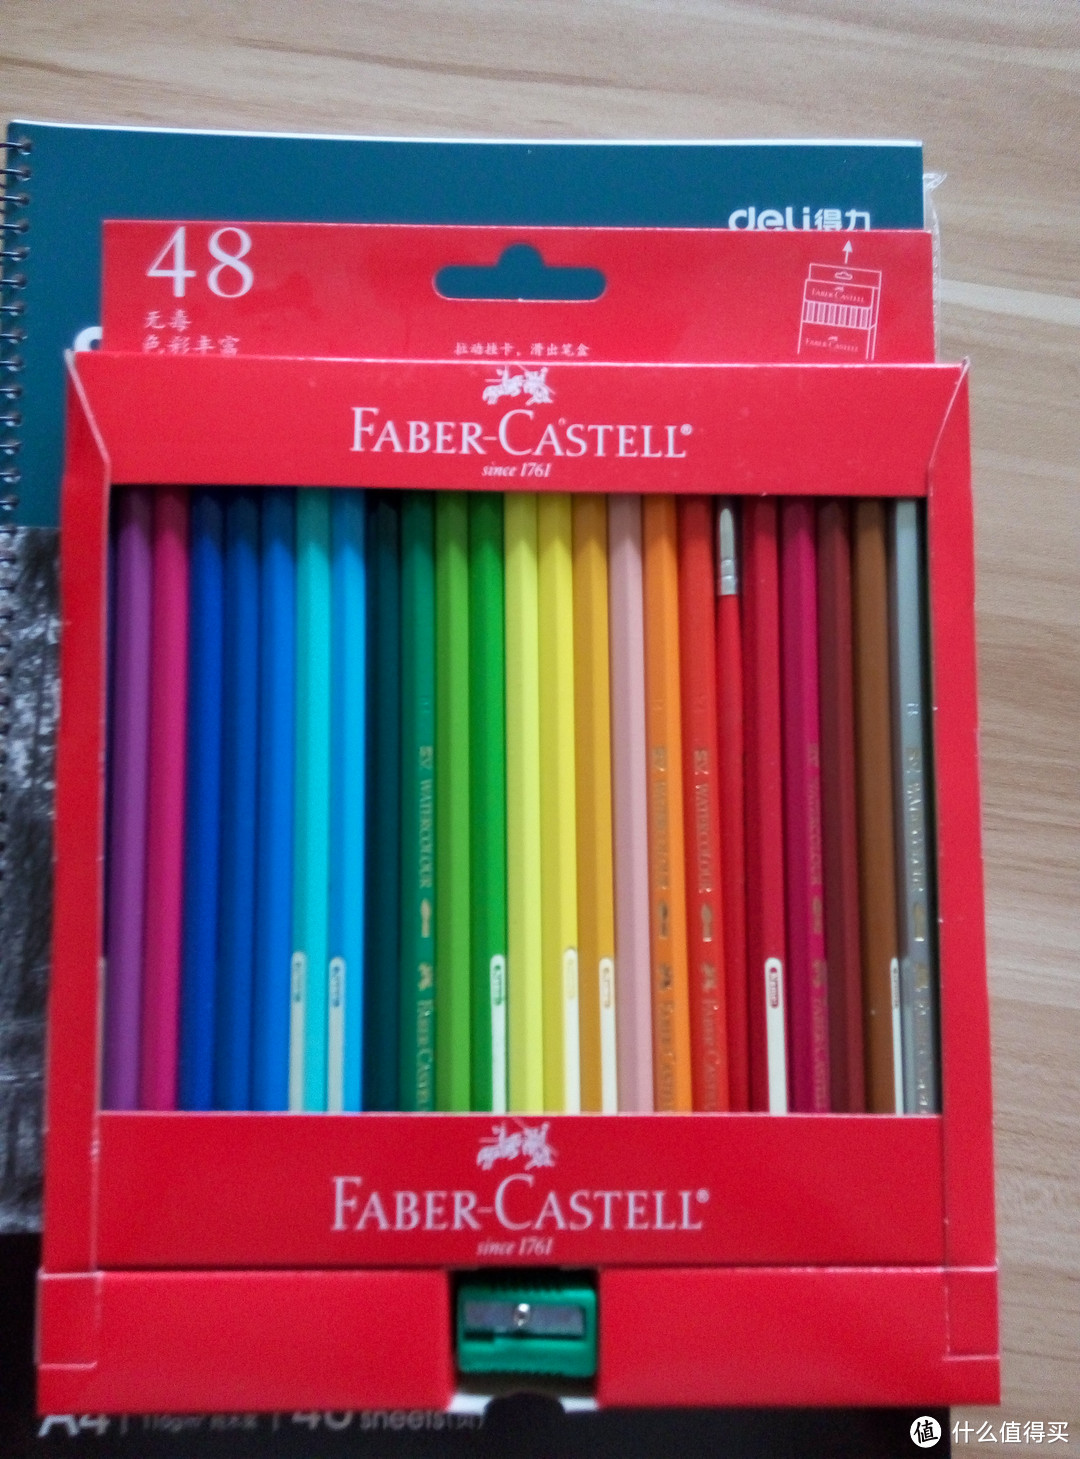 又来装文艺——Faber-castell 辉柏嘉114468 水溶性彩色铅笔